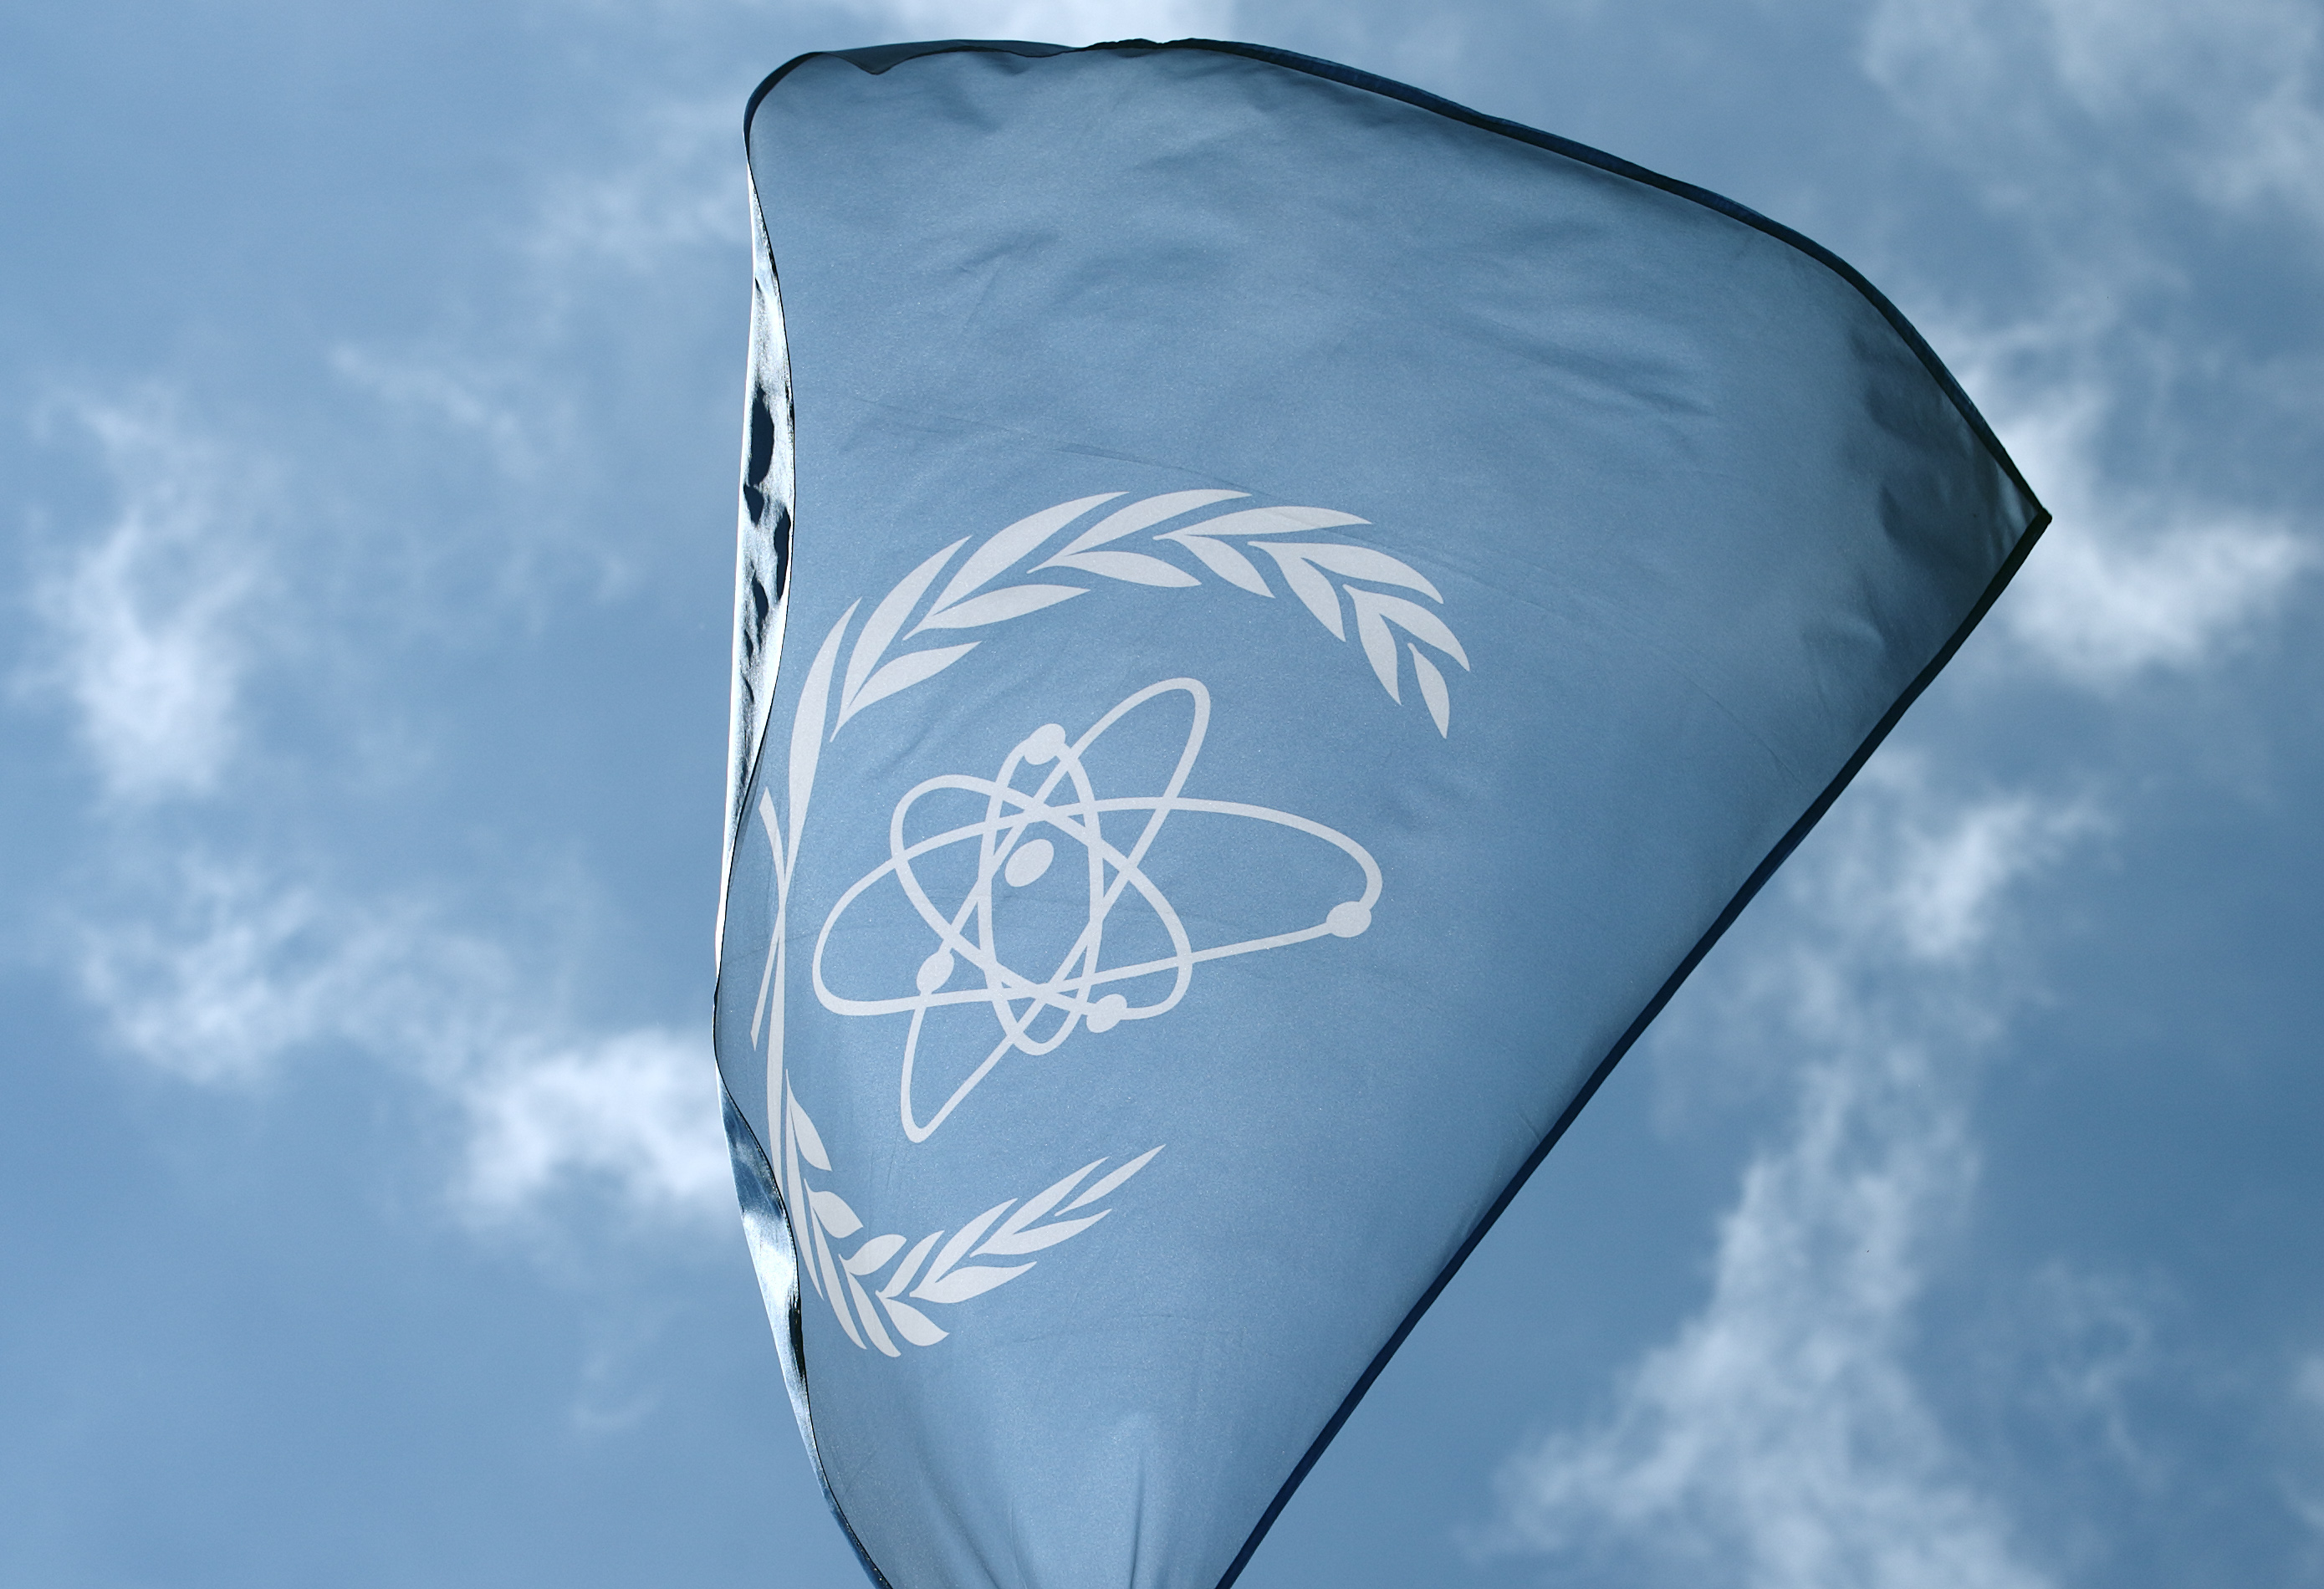 Le drapeau de l'Agence internationale de l'énergie atomique (AIEA) flotte devant son siège à Vienne, en Autriche, le 28 mai 2015. © Heinz-Peter Bader / Reuters